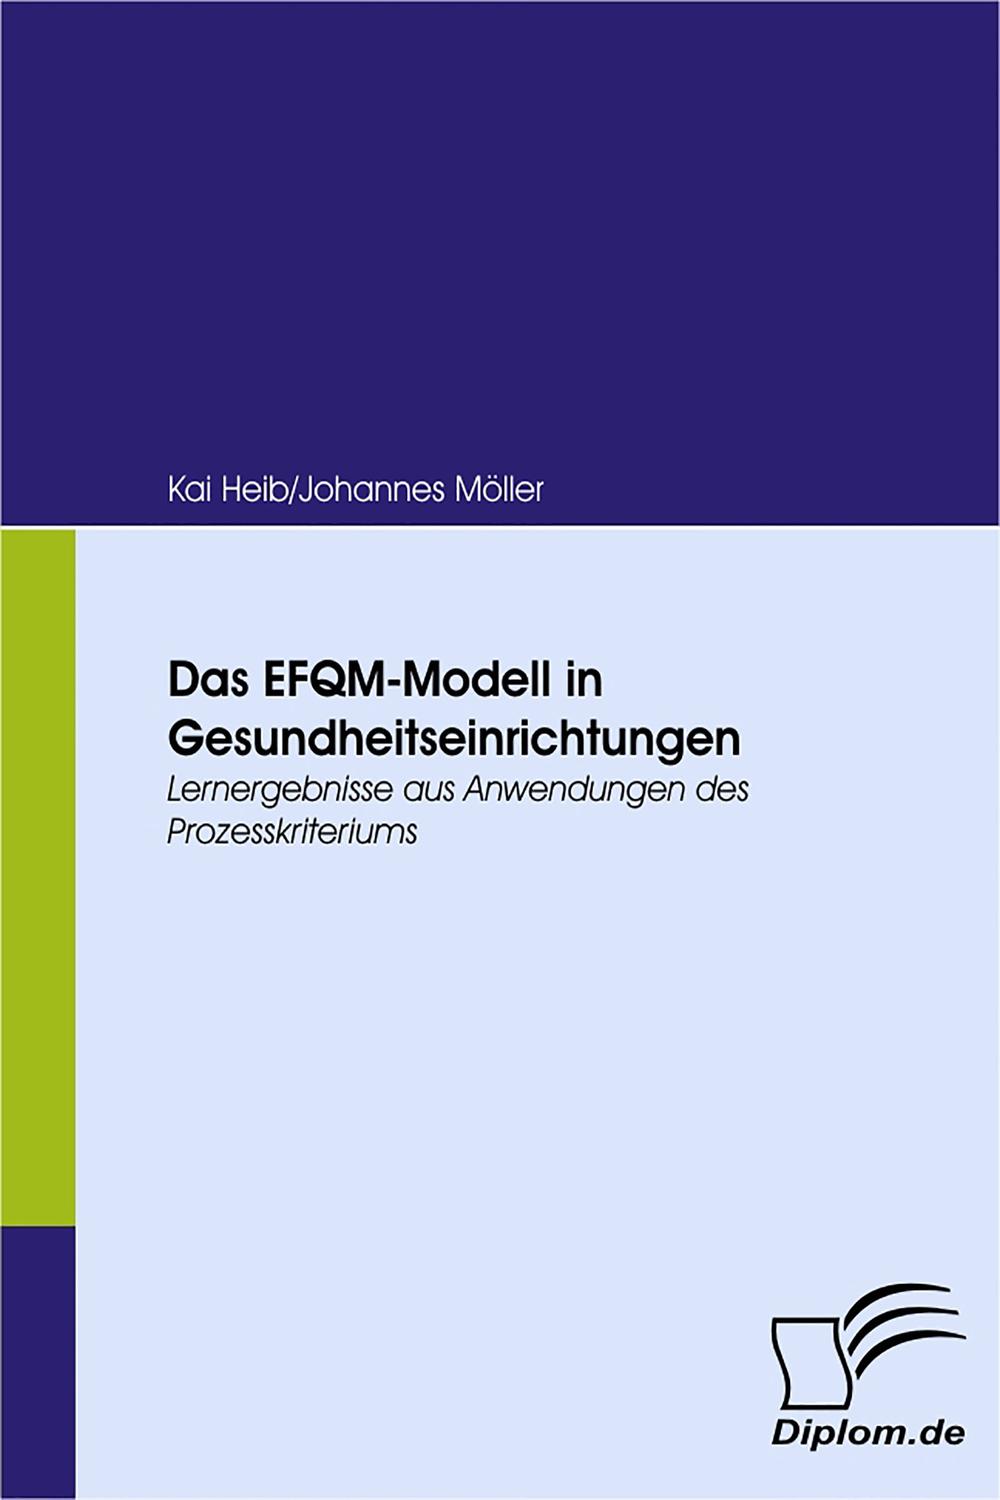 Das EFQM-Modell in Gesundheitseinrichtungen - Kai Heib, Johannes Möller